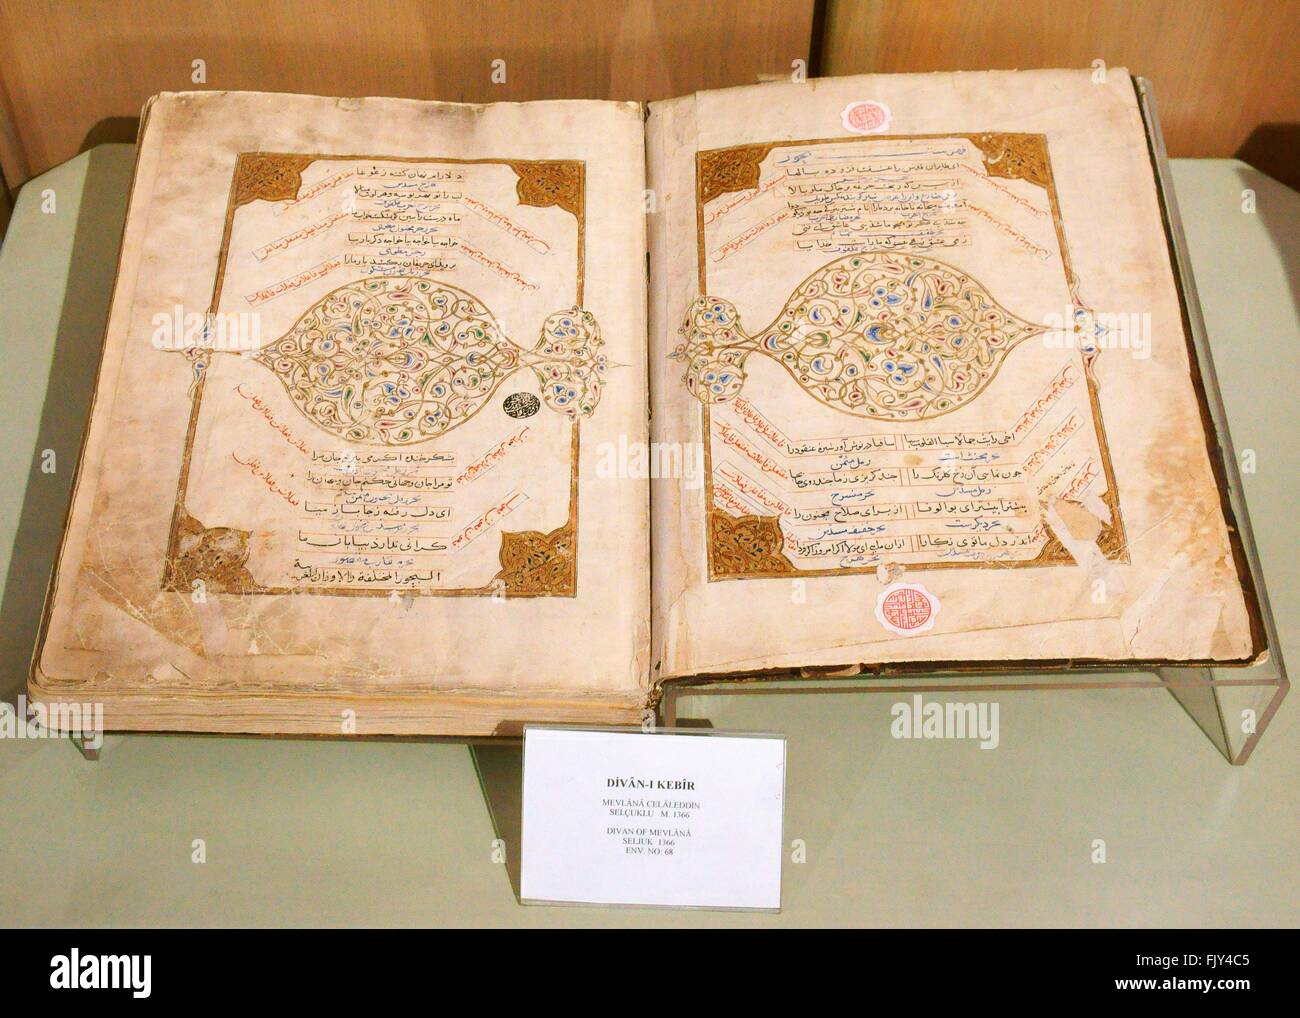 Musée de Mevlana, ville de Konya, Turquie. Livre de poèmes ou masnavis écrit par mystique soufi mevlana, date de 1366 Banque D'Images